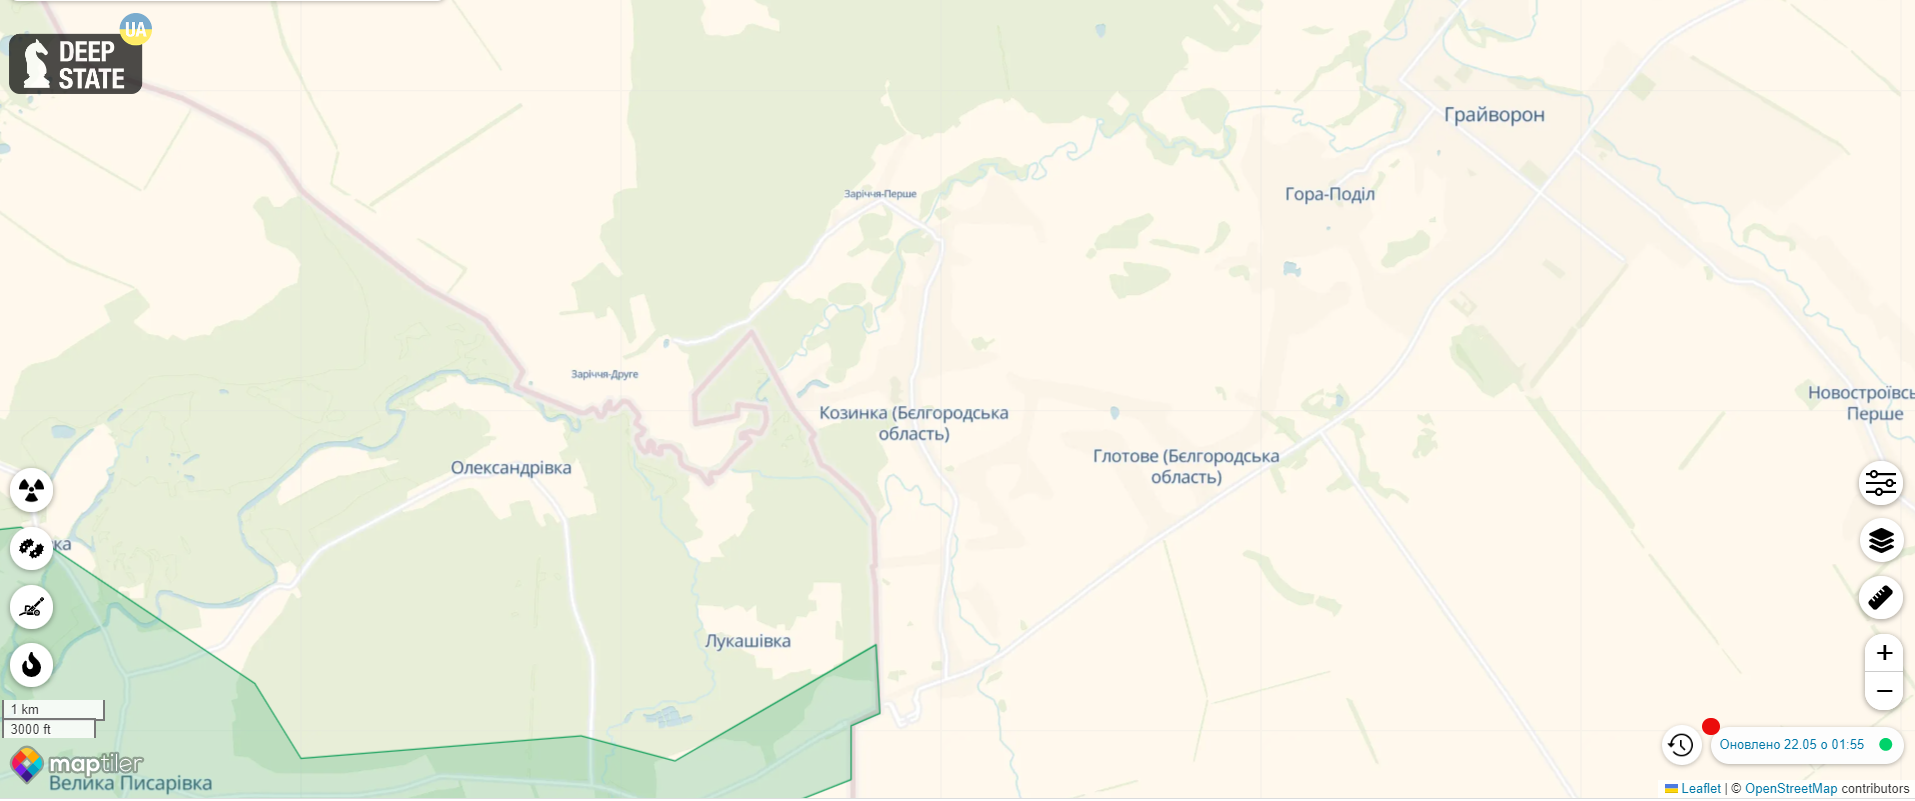 Російські добровольці влаштували спецоперацію у Бєлгородській області: у регіоні оголосили "КТО" та вивозять ядерні запаси. Всі подробиці